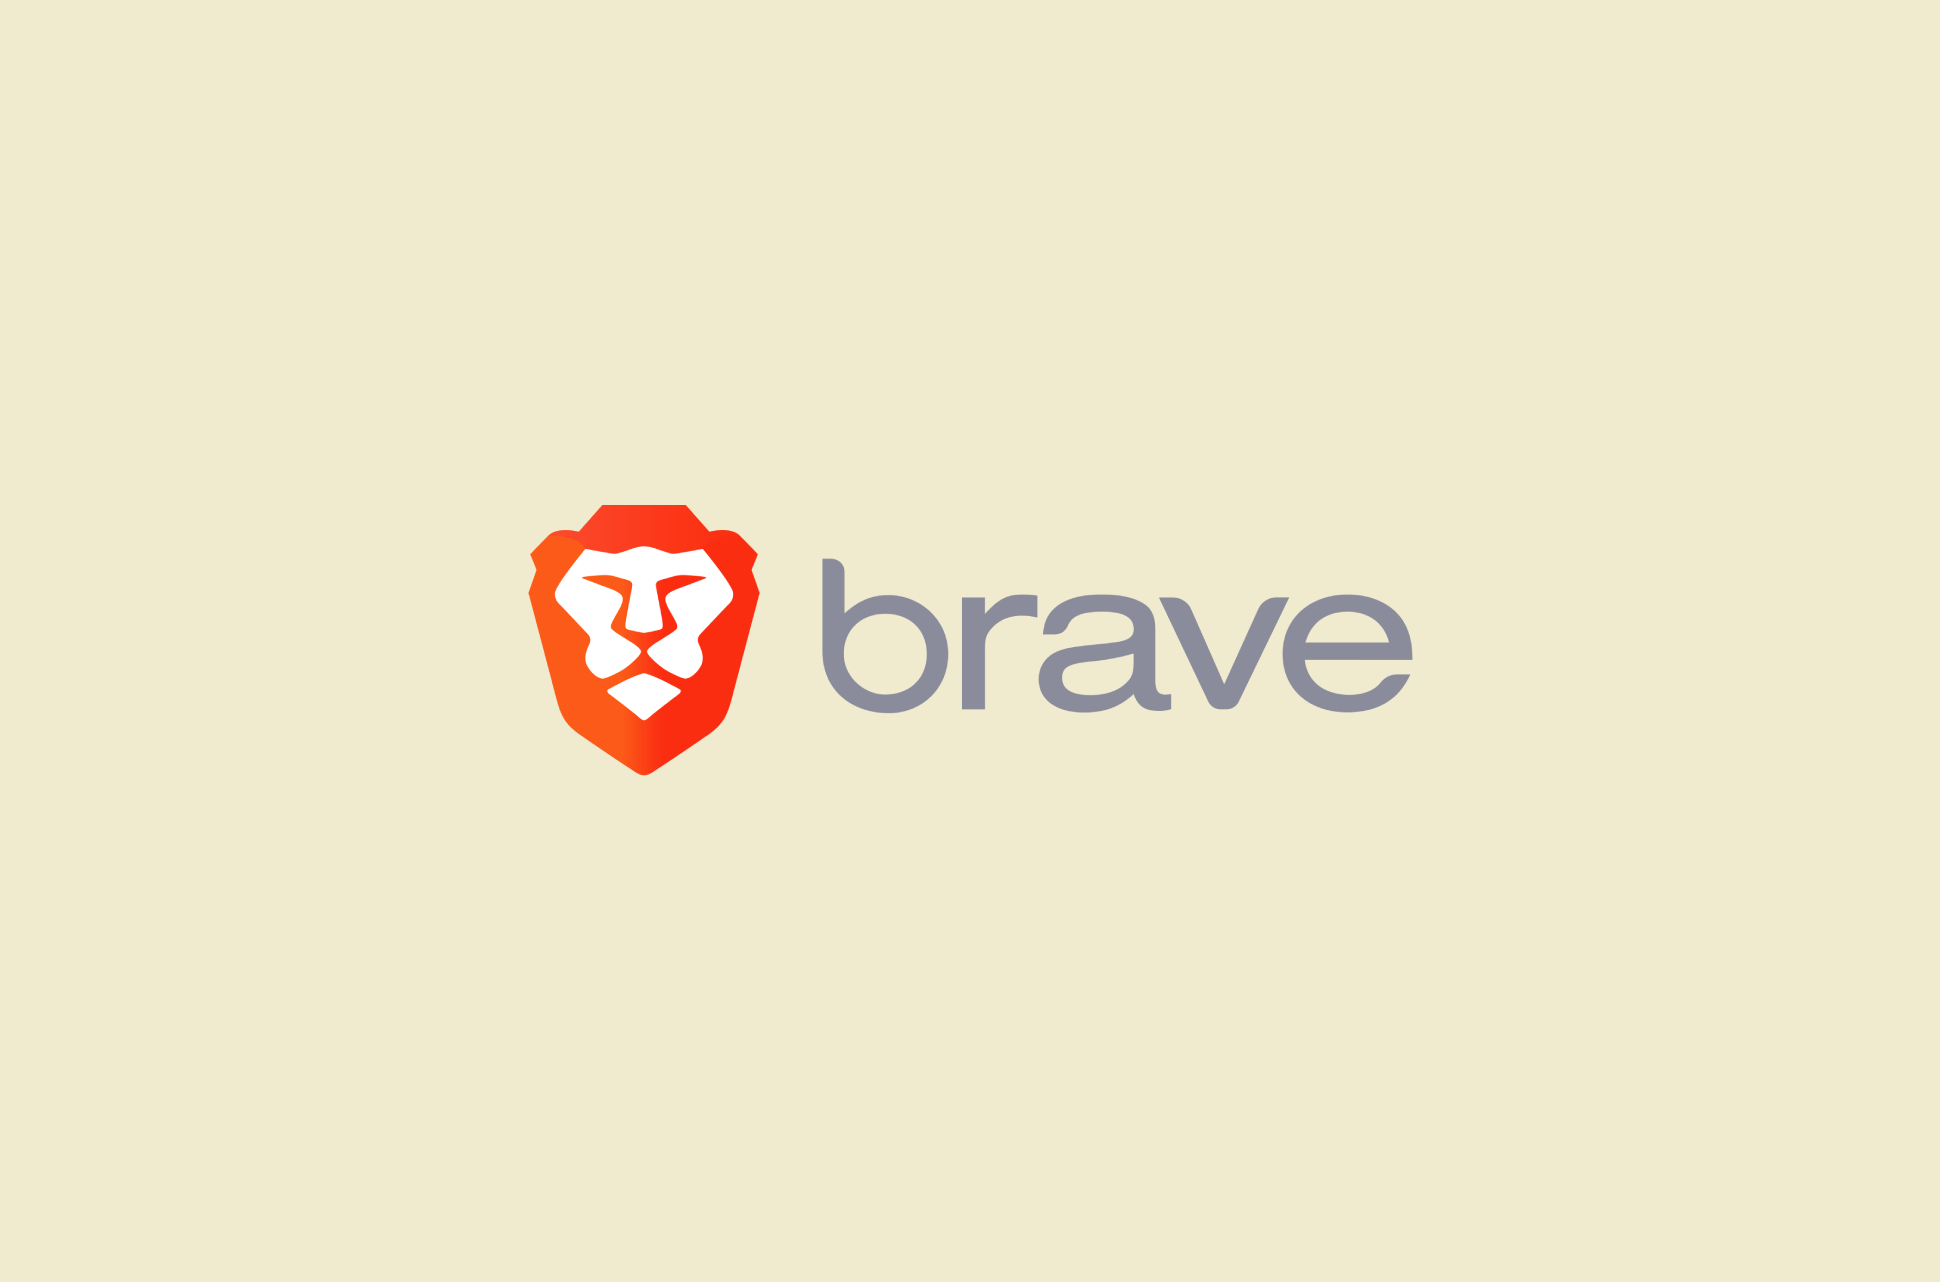 Brave Search logo.